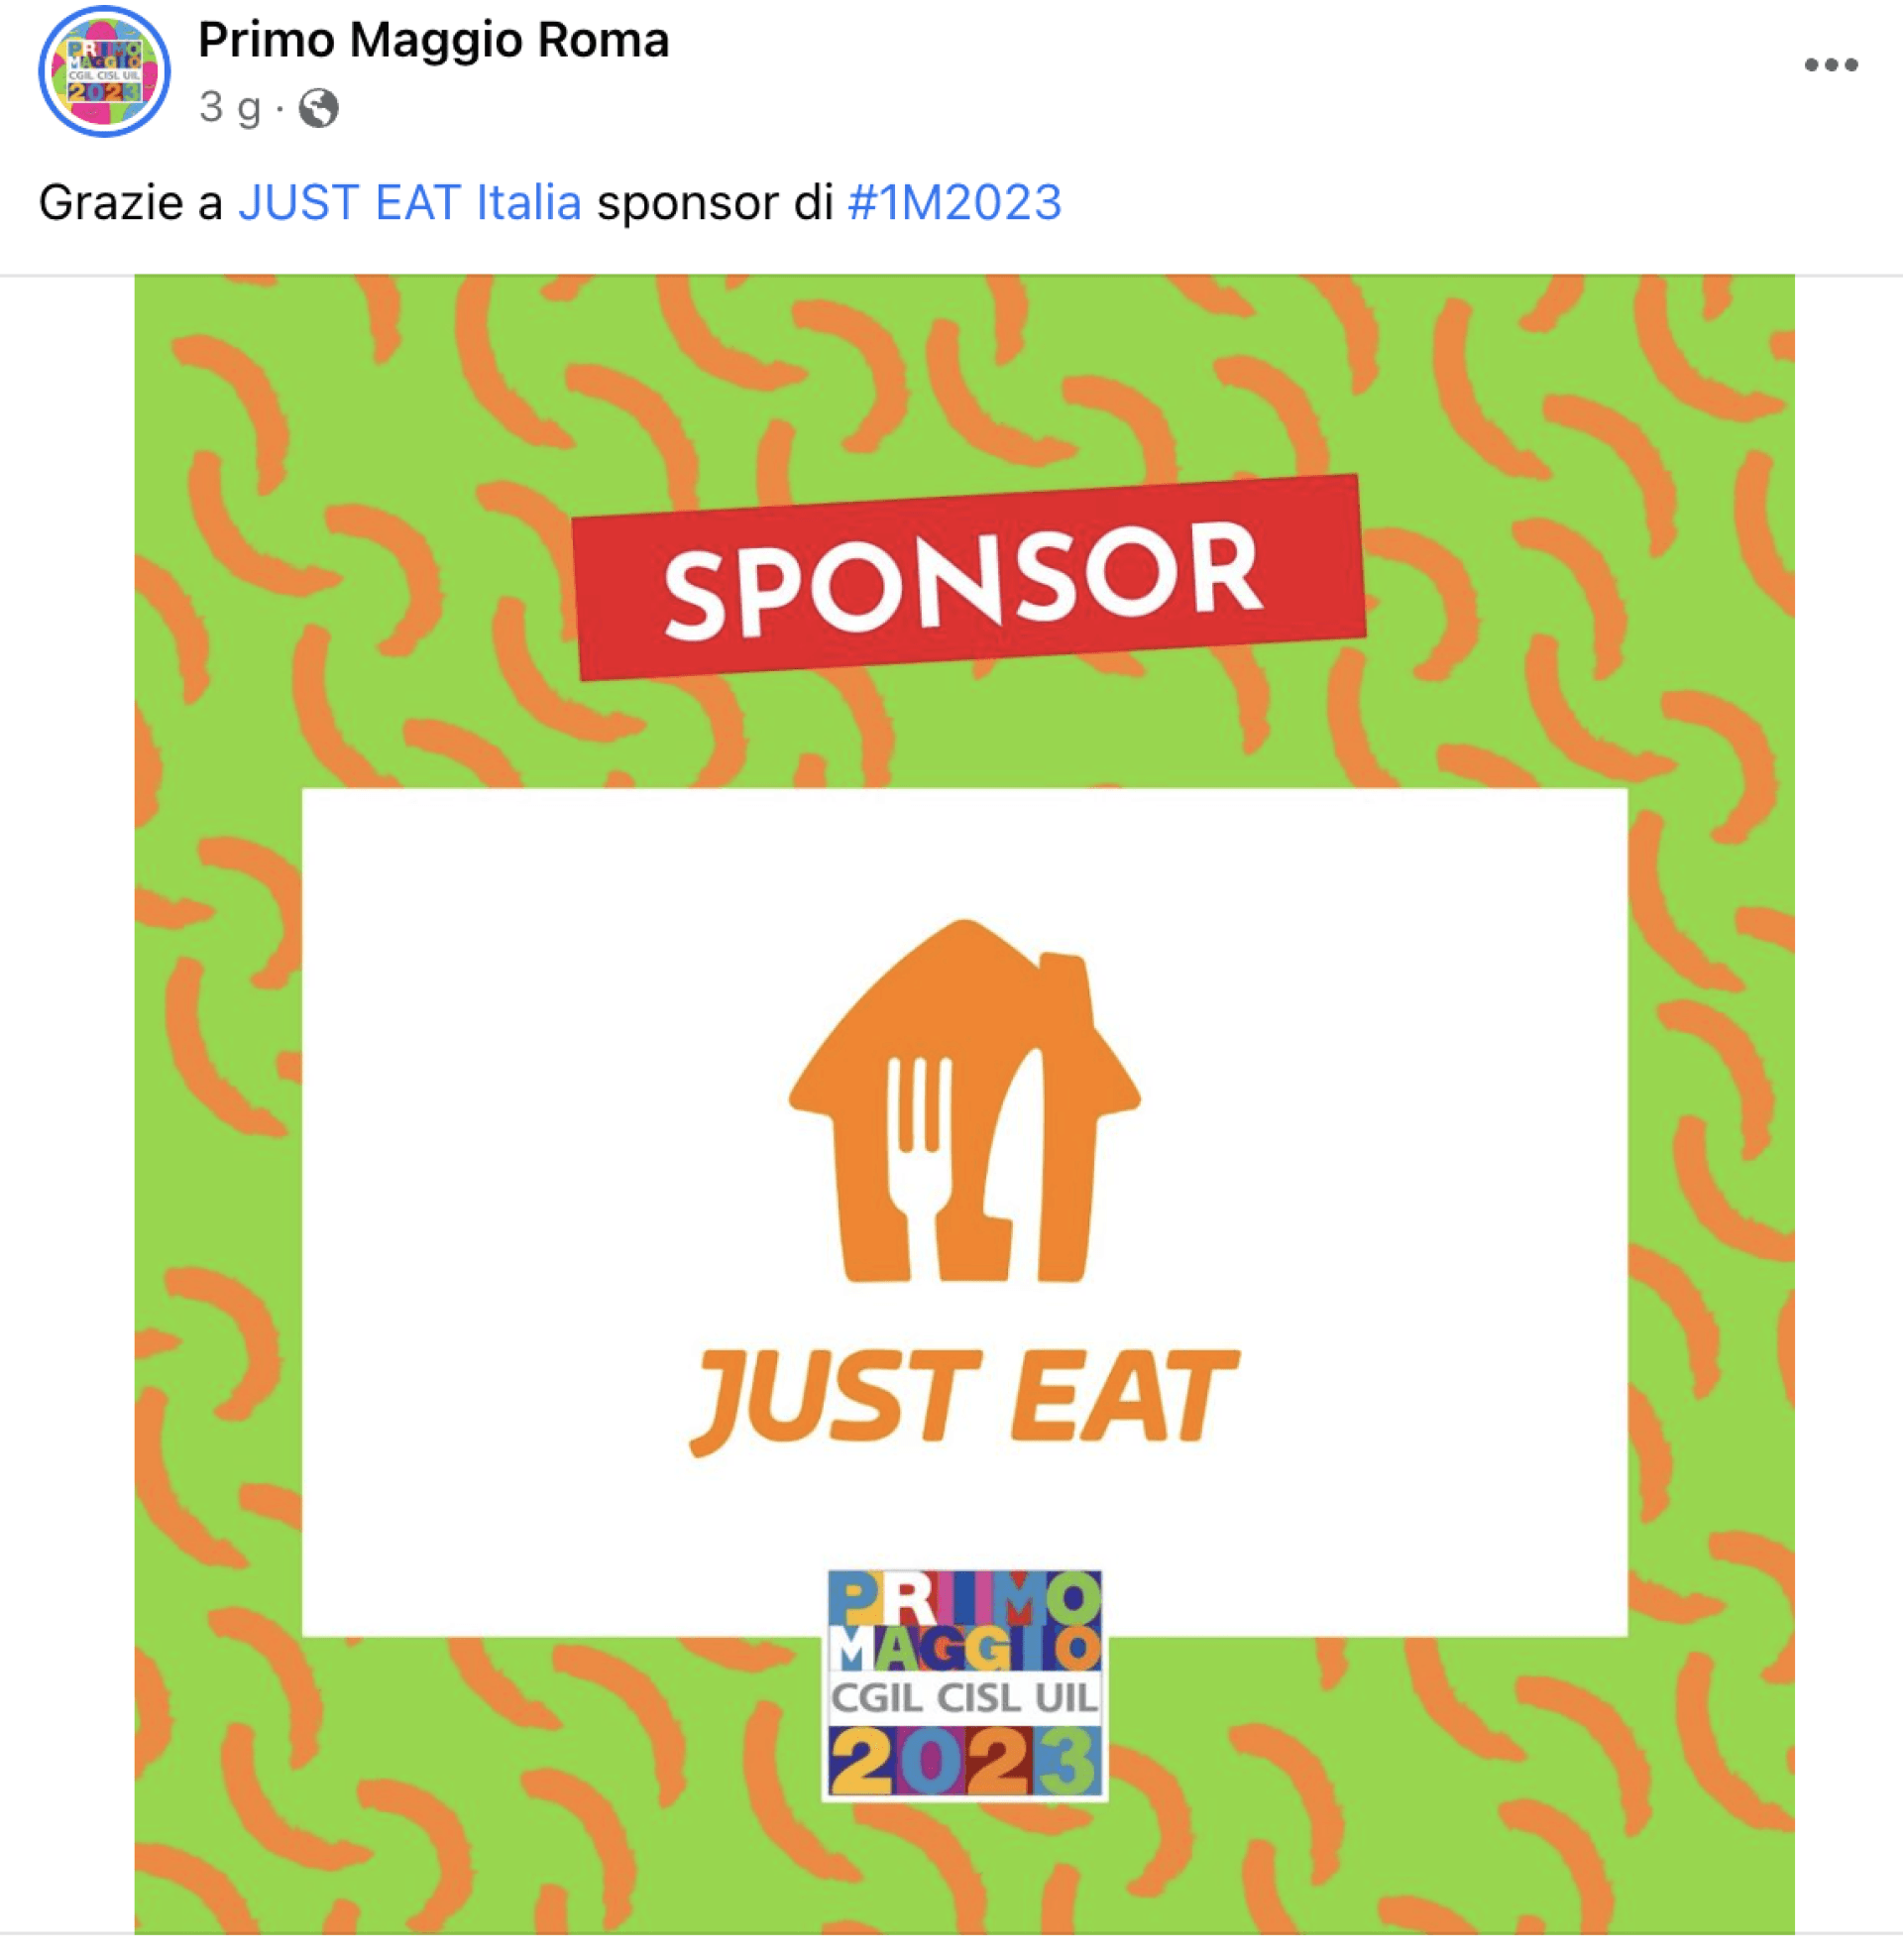 L'annuncio della sponsorizzazione di Just Eat al Primo maggio